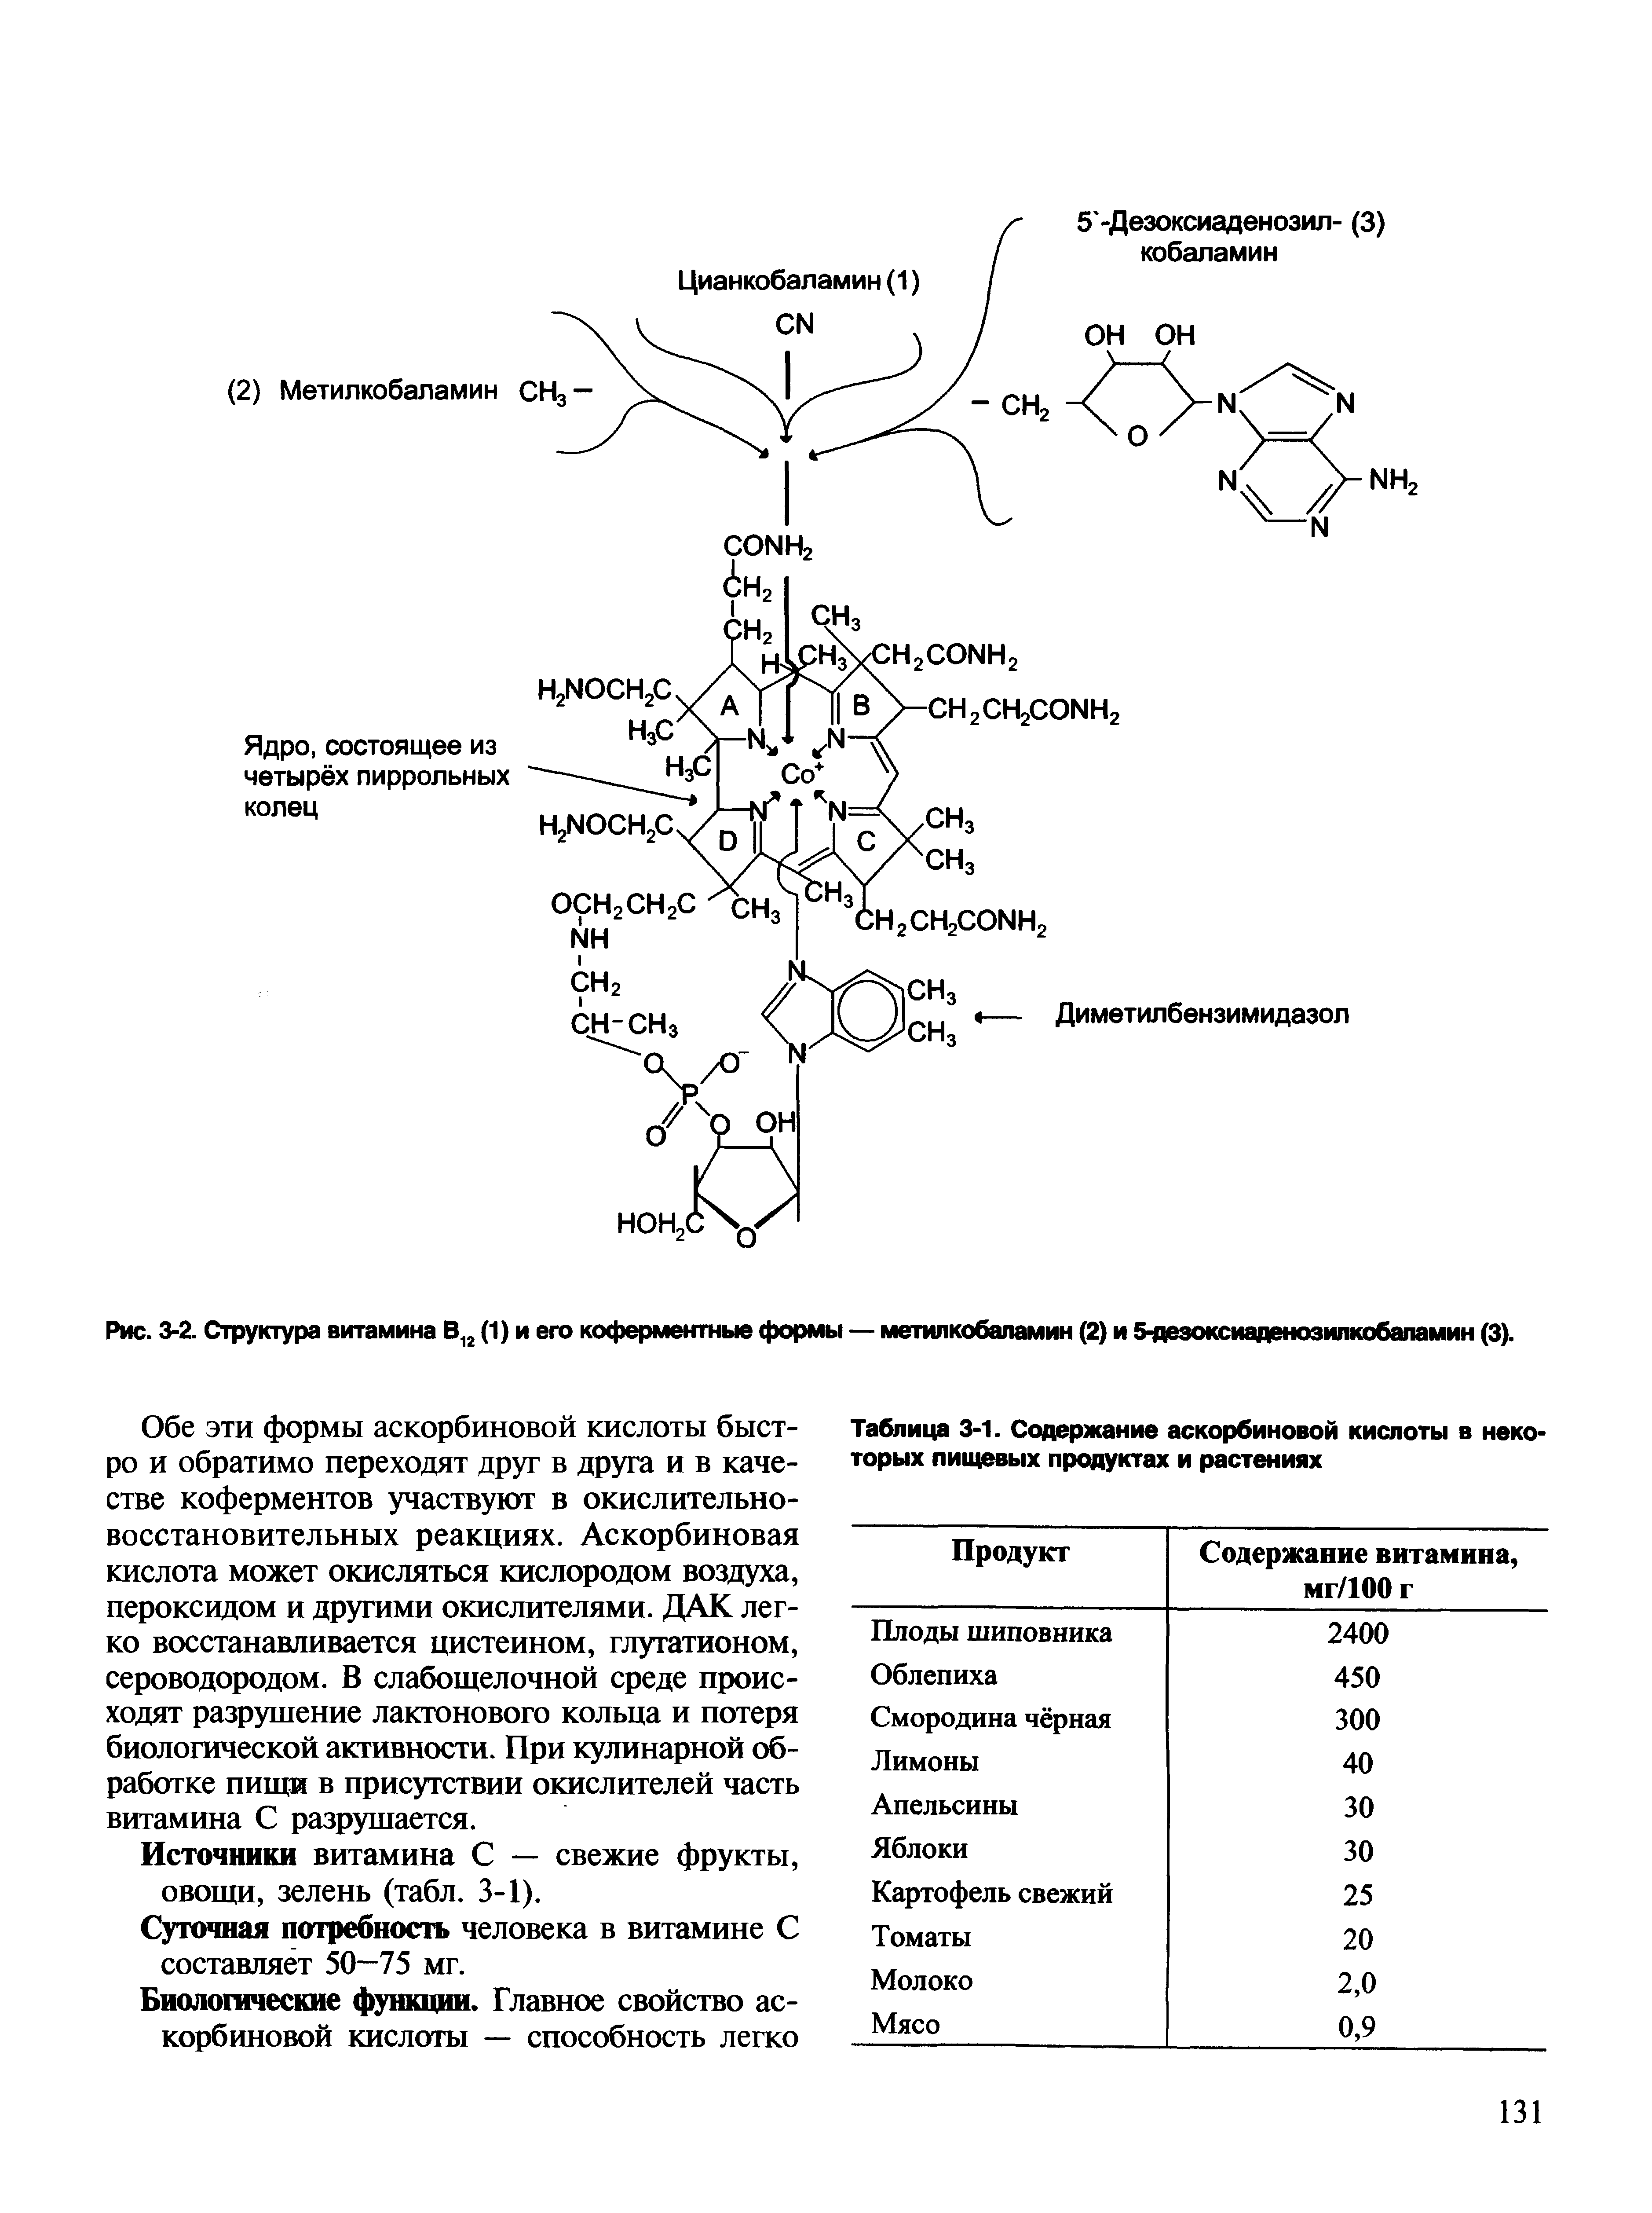 Рис. 3-2. Структура витамина В12 (1) и его коферментные формы — метилкобаламин (2) и 5-дезоксиаденозилкобаламин (3).